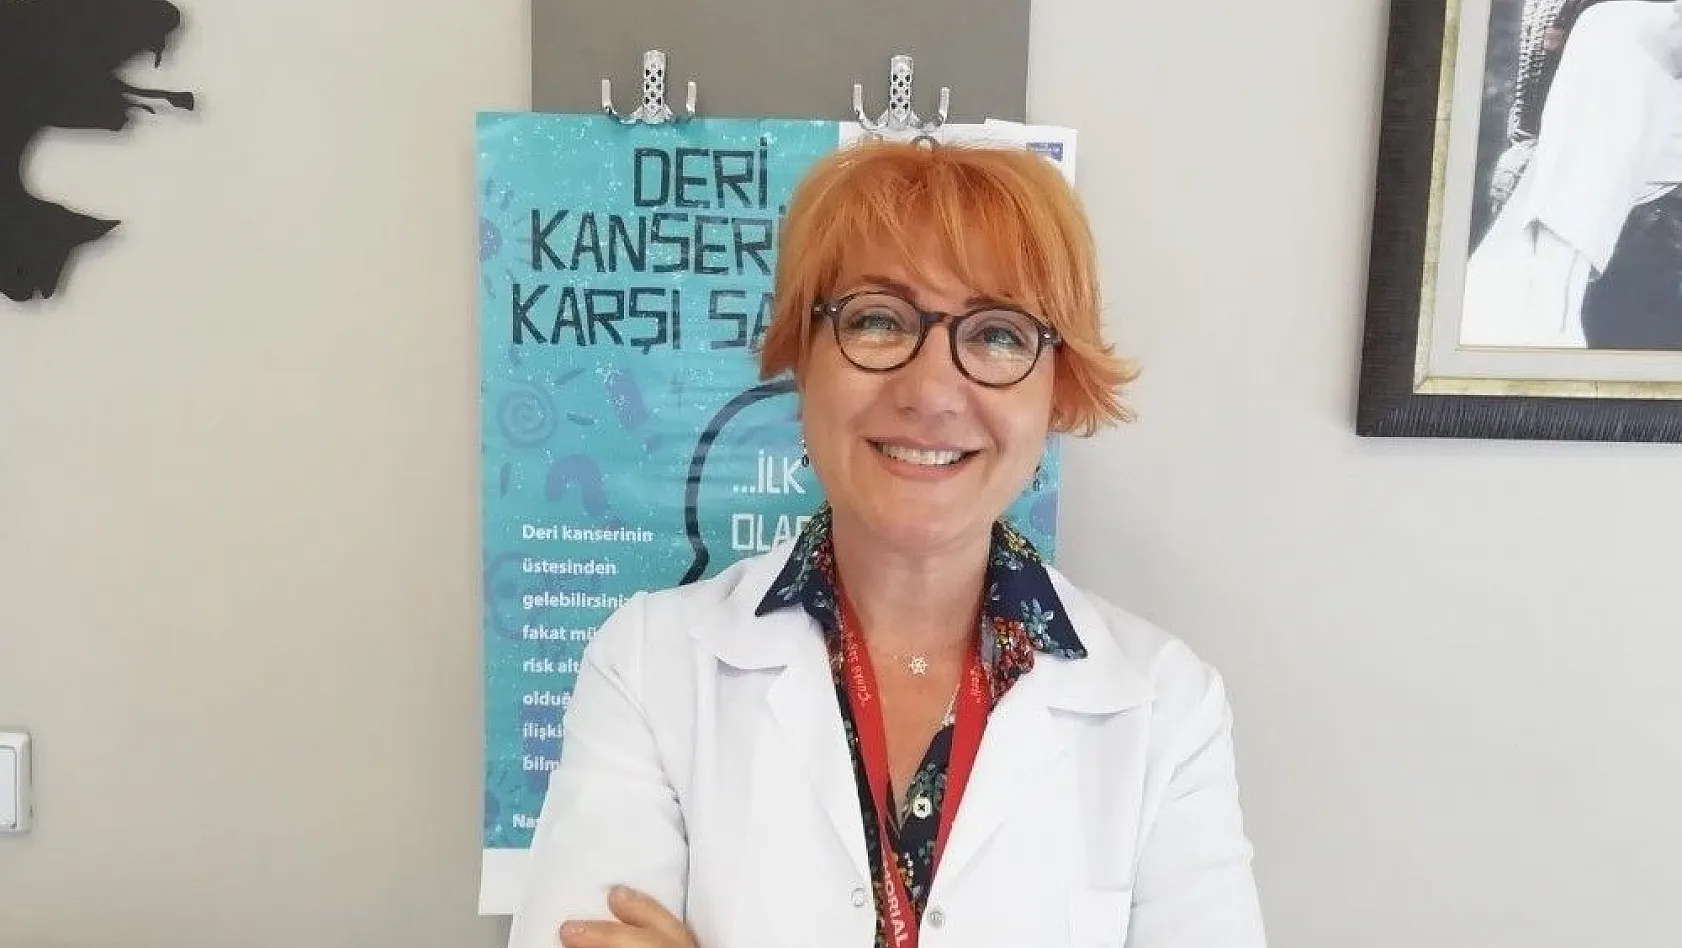 Dermatoloji Uzmanı Dr. Sema Karaoğlu: 'Vücudumuzun içindeki benleri, benlerin içindeki çirkin ördek yavrularını arıyoruz'
